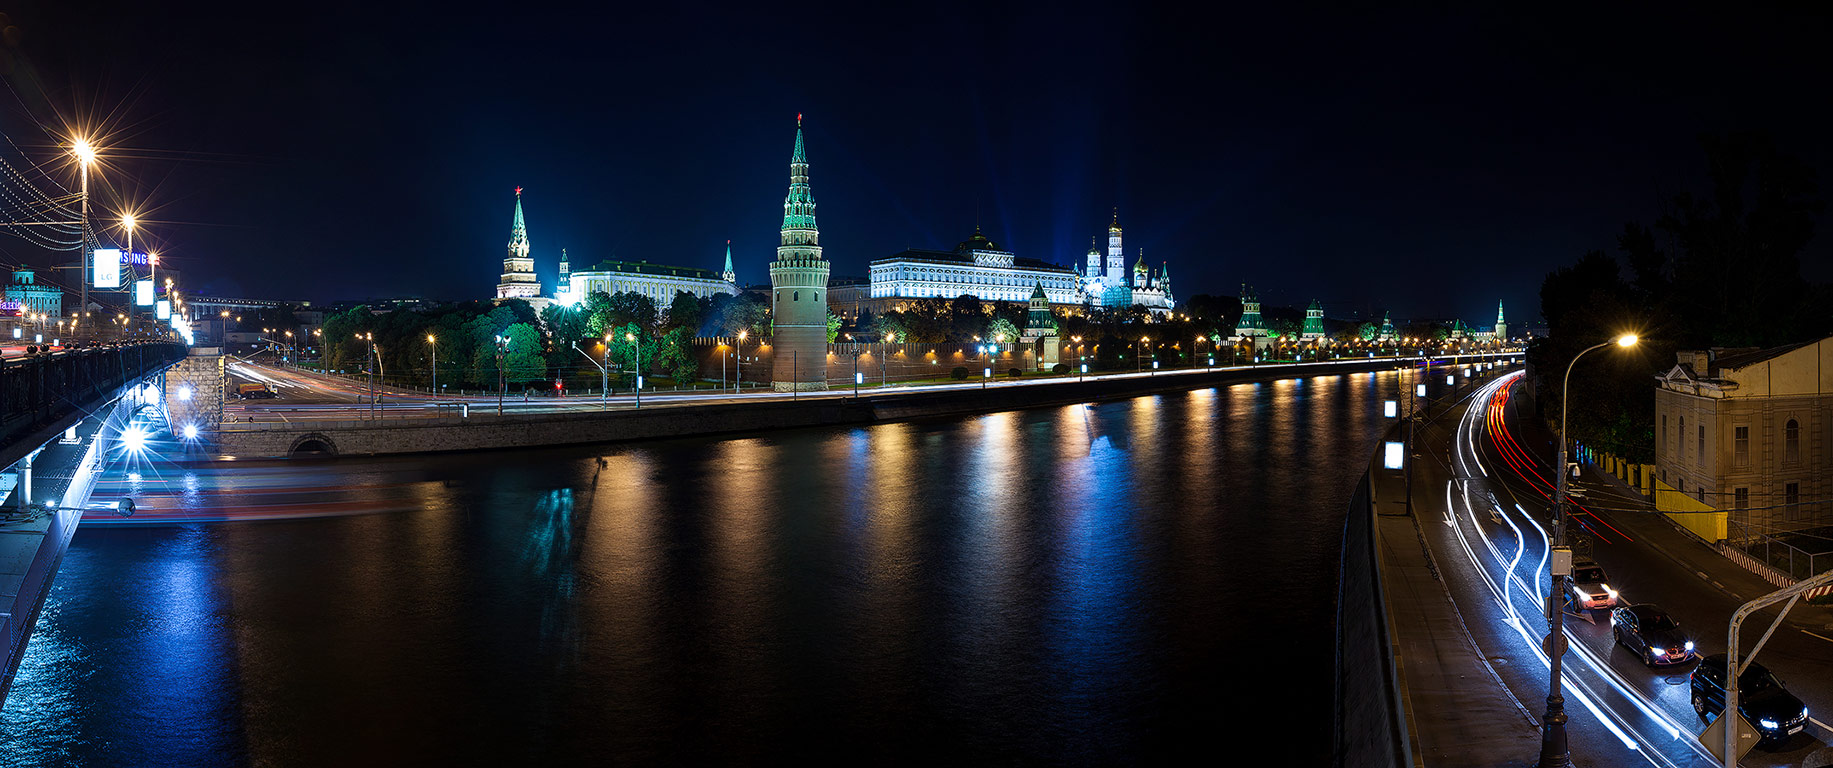 Кремлевская набережная панорама